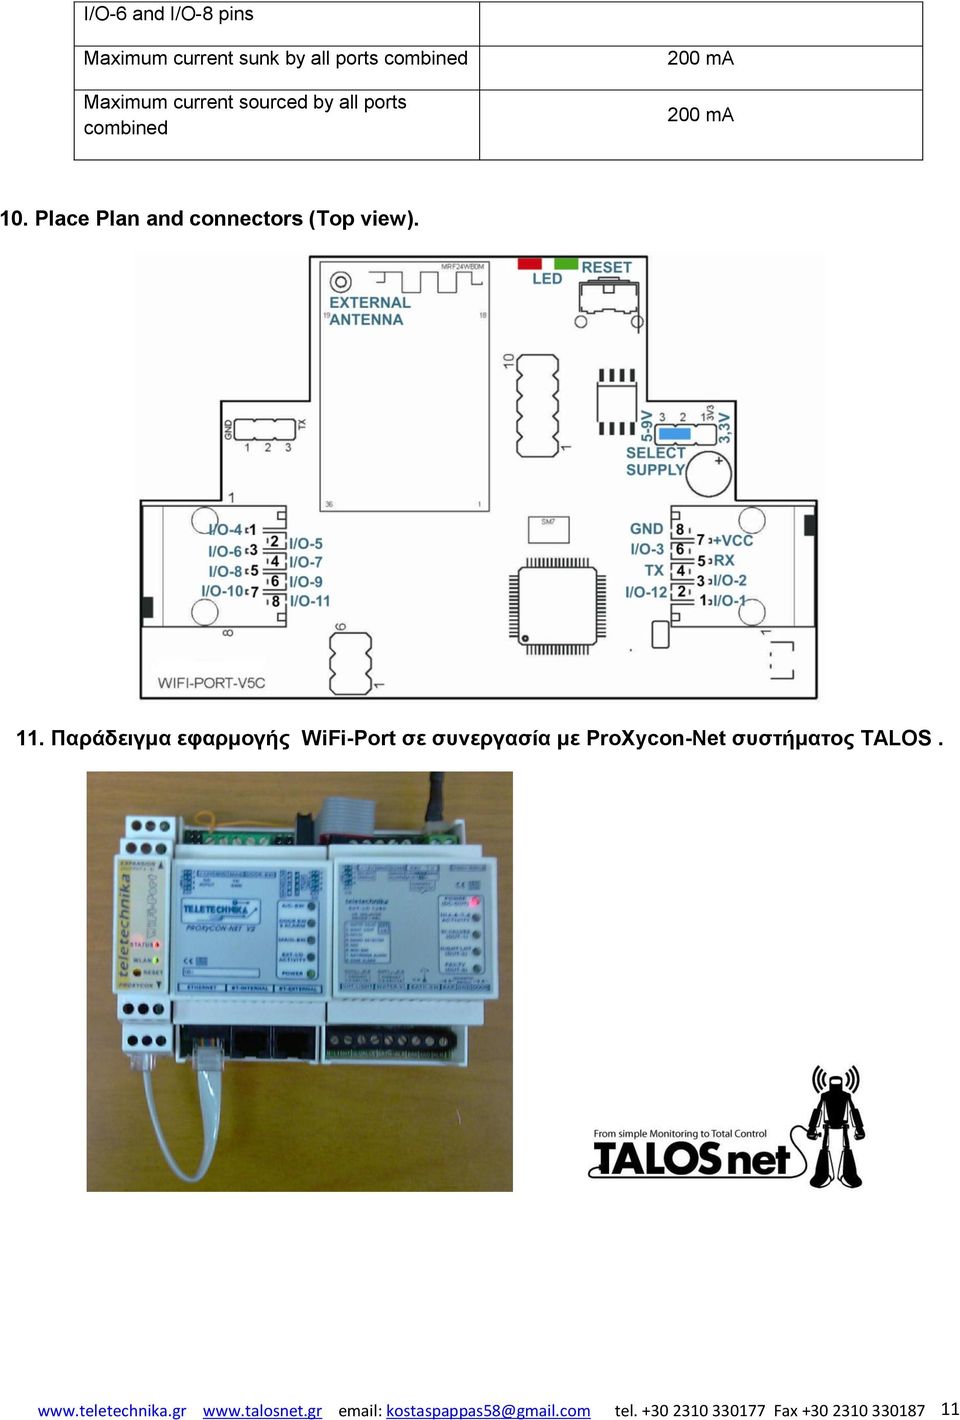 Παπάδειγμα εθαπμογήρ WiFi-Port ζε ζςνεπγαζία με ProΧycon-Net ζςζηήμαηορ TALOS. www.